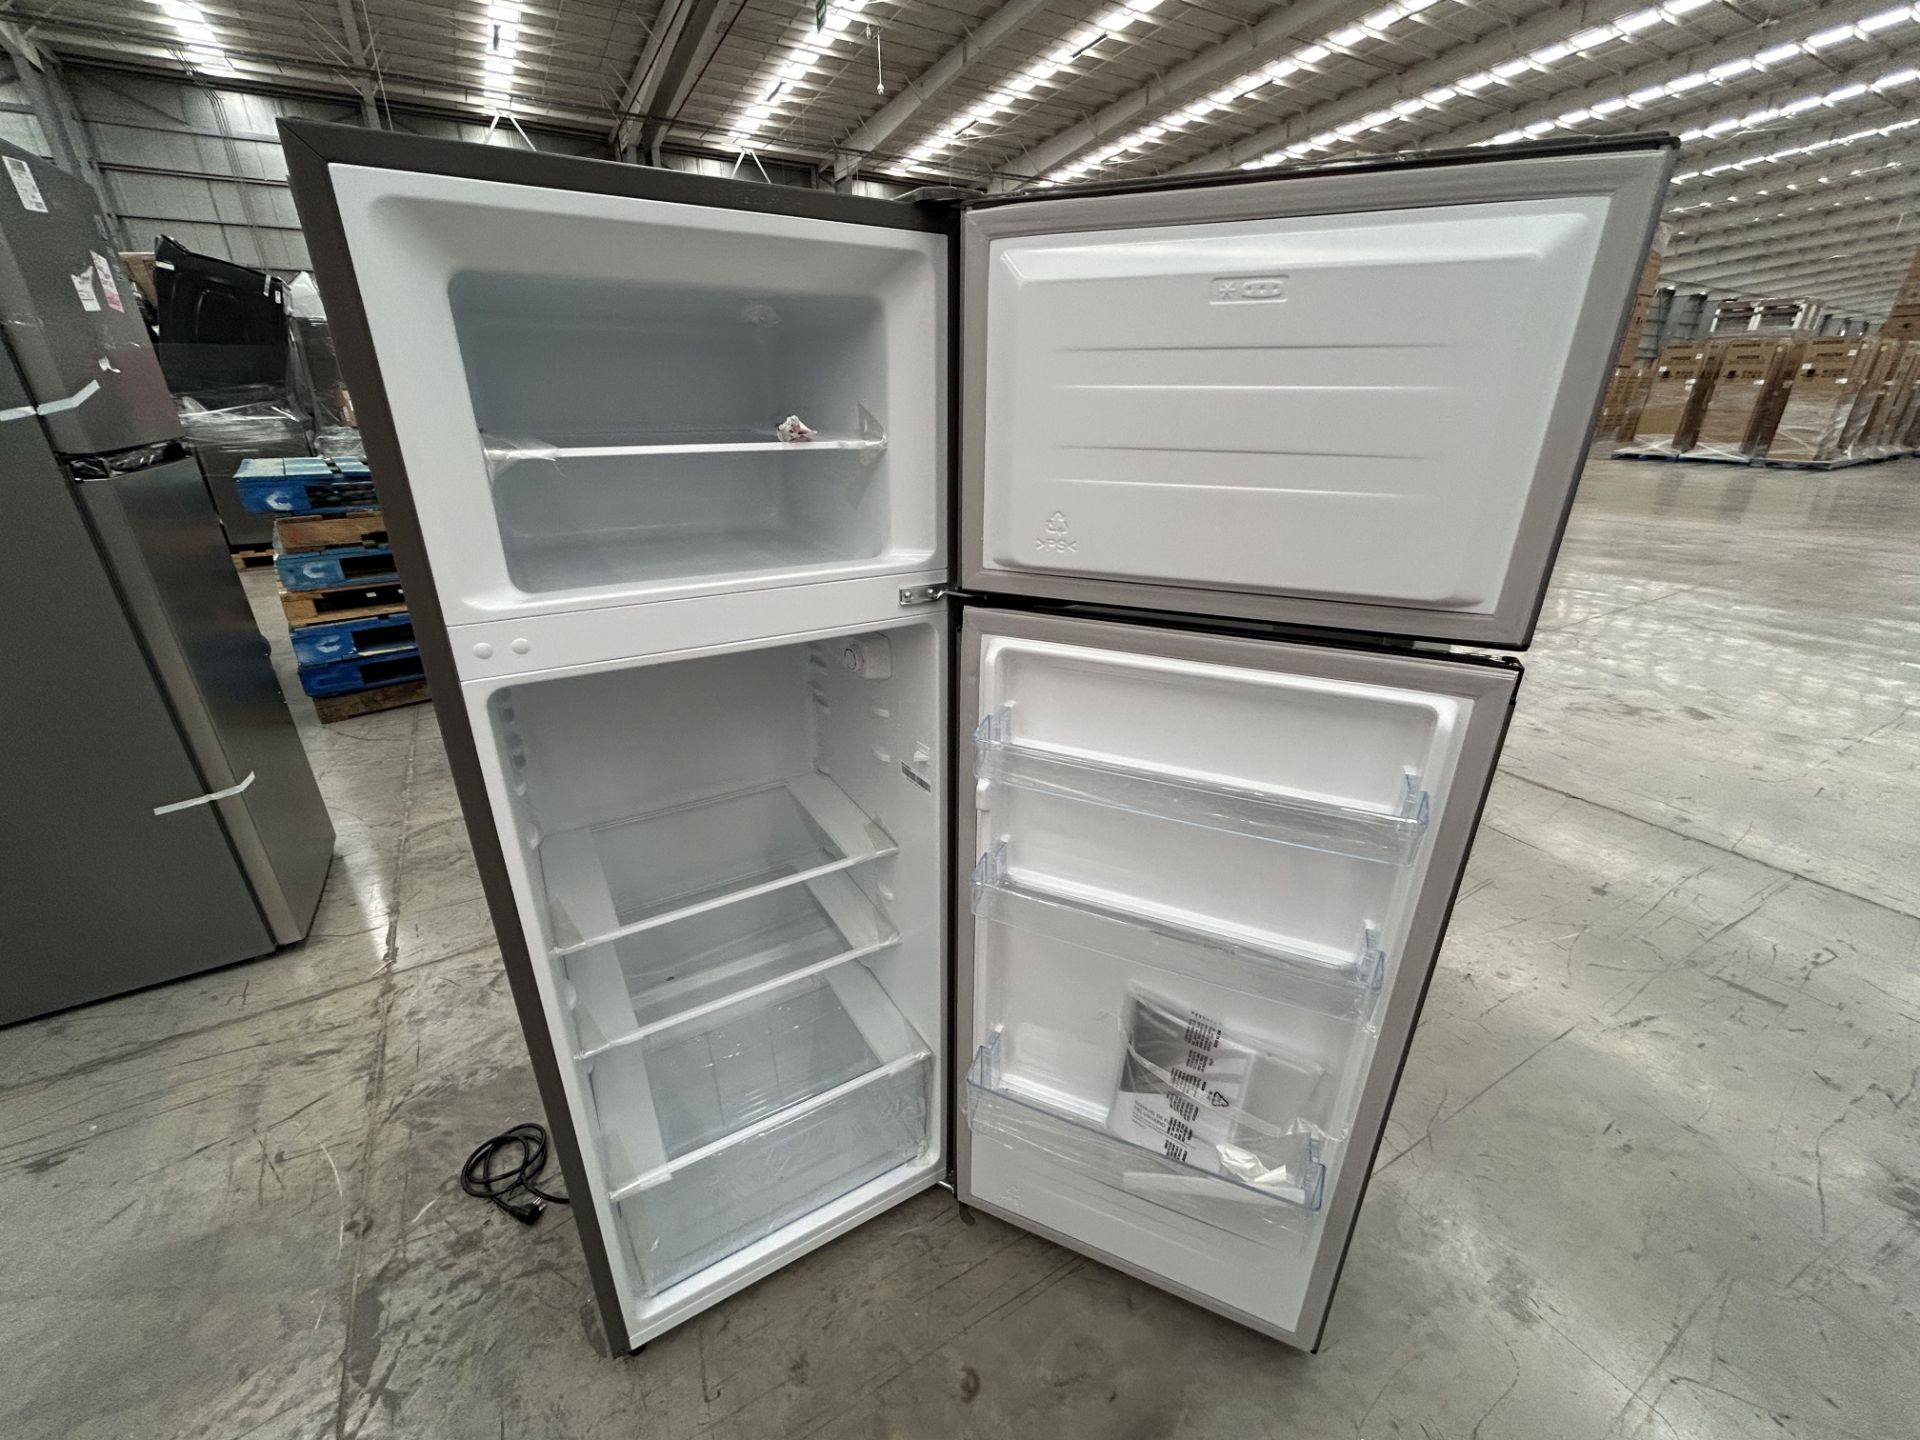 Lote de 2 Refrigeradores contiene: 1 Refrigerador Marca HISENSE, Modelo RT80D6AGX, Serie 20358, Col - Image 5 of 6